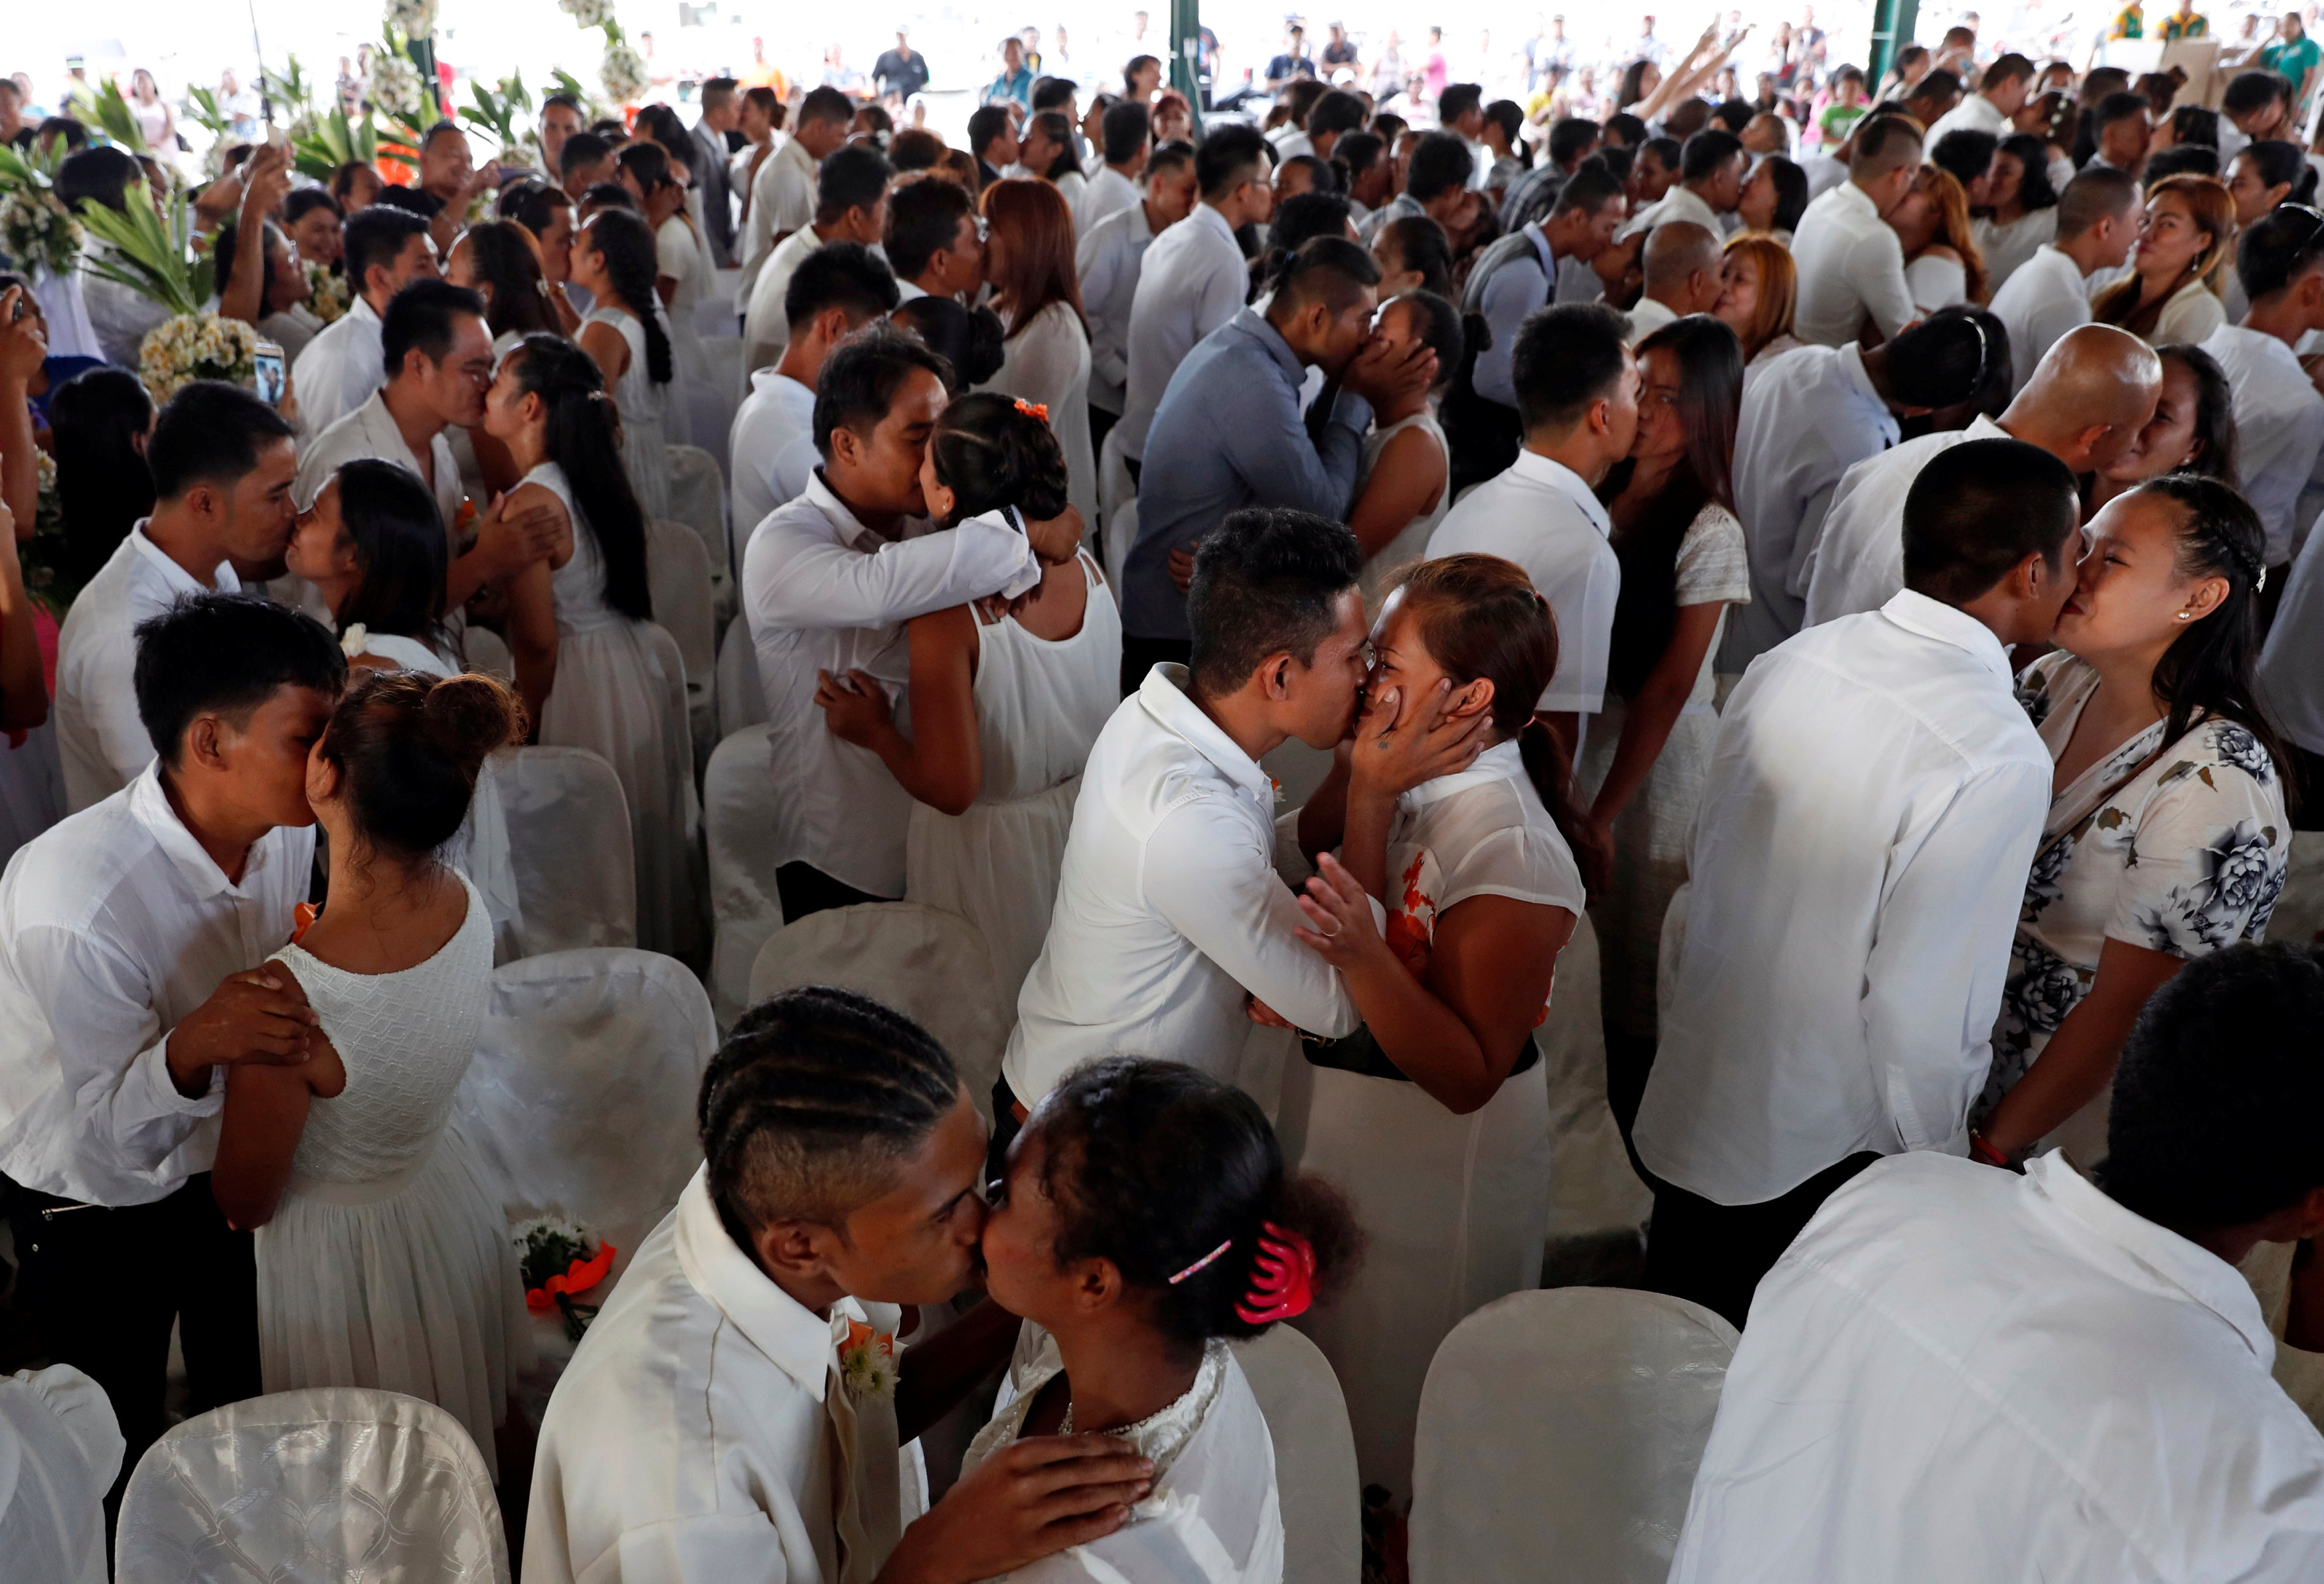 菲律宾结婚照片图片